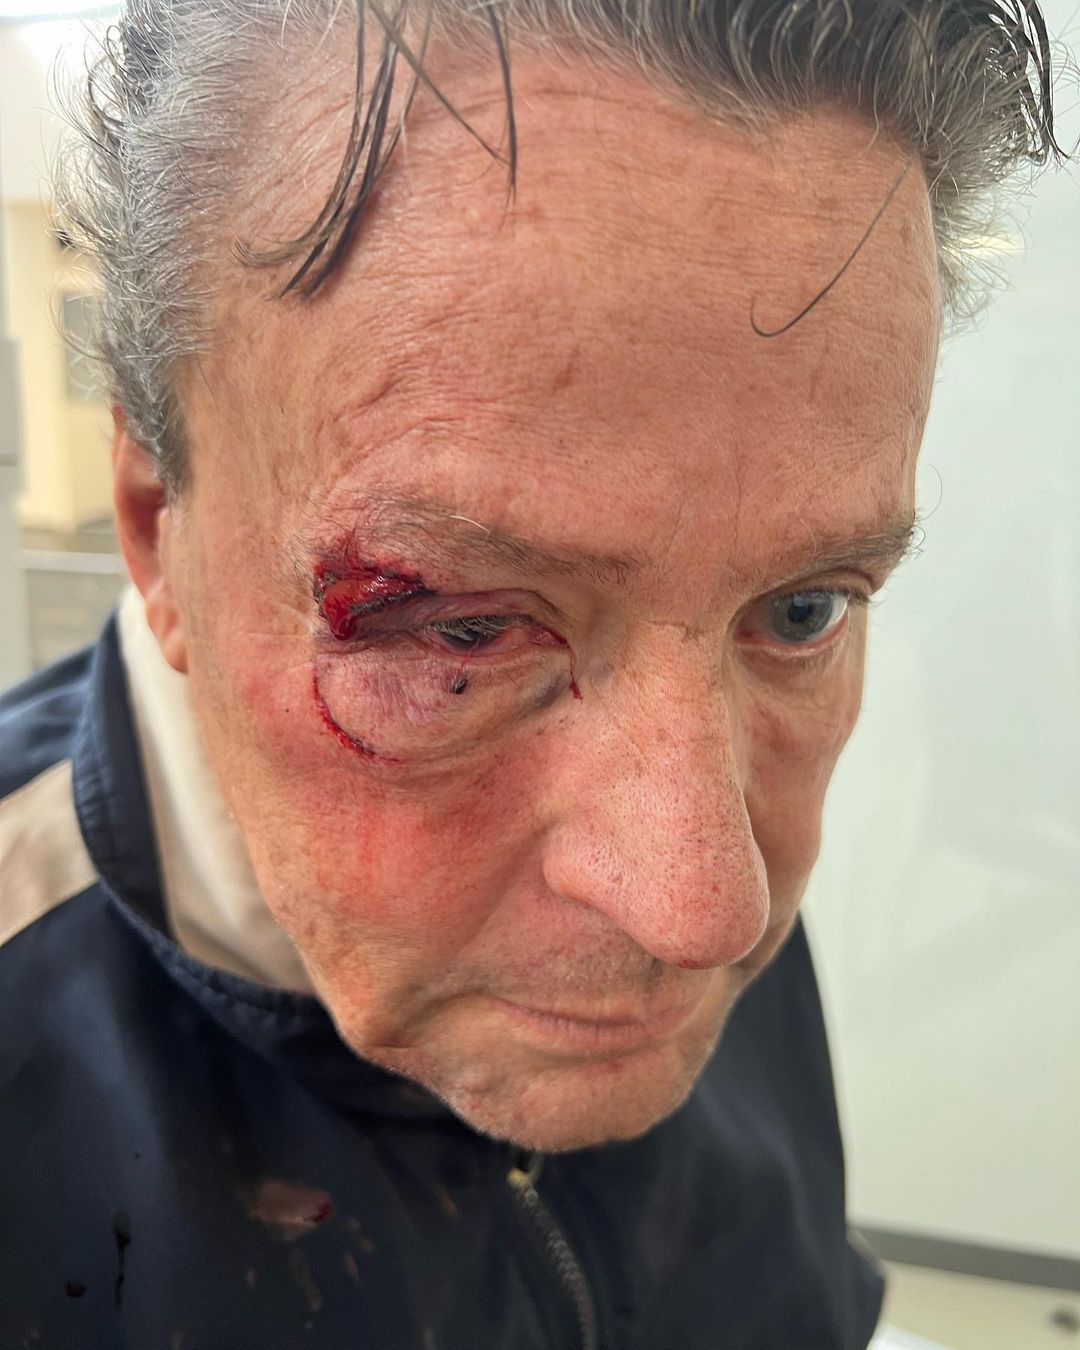 El actor fue golpeado en medio de la movilización generada por el asesinato de una persona -al parecer un policía- "a 30 metros de su casa" (Foto: IG @adamereacciona)